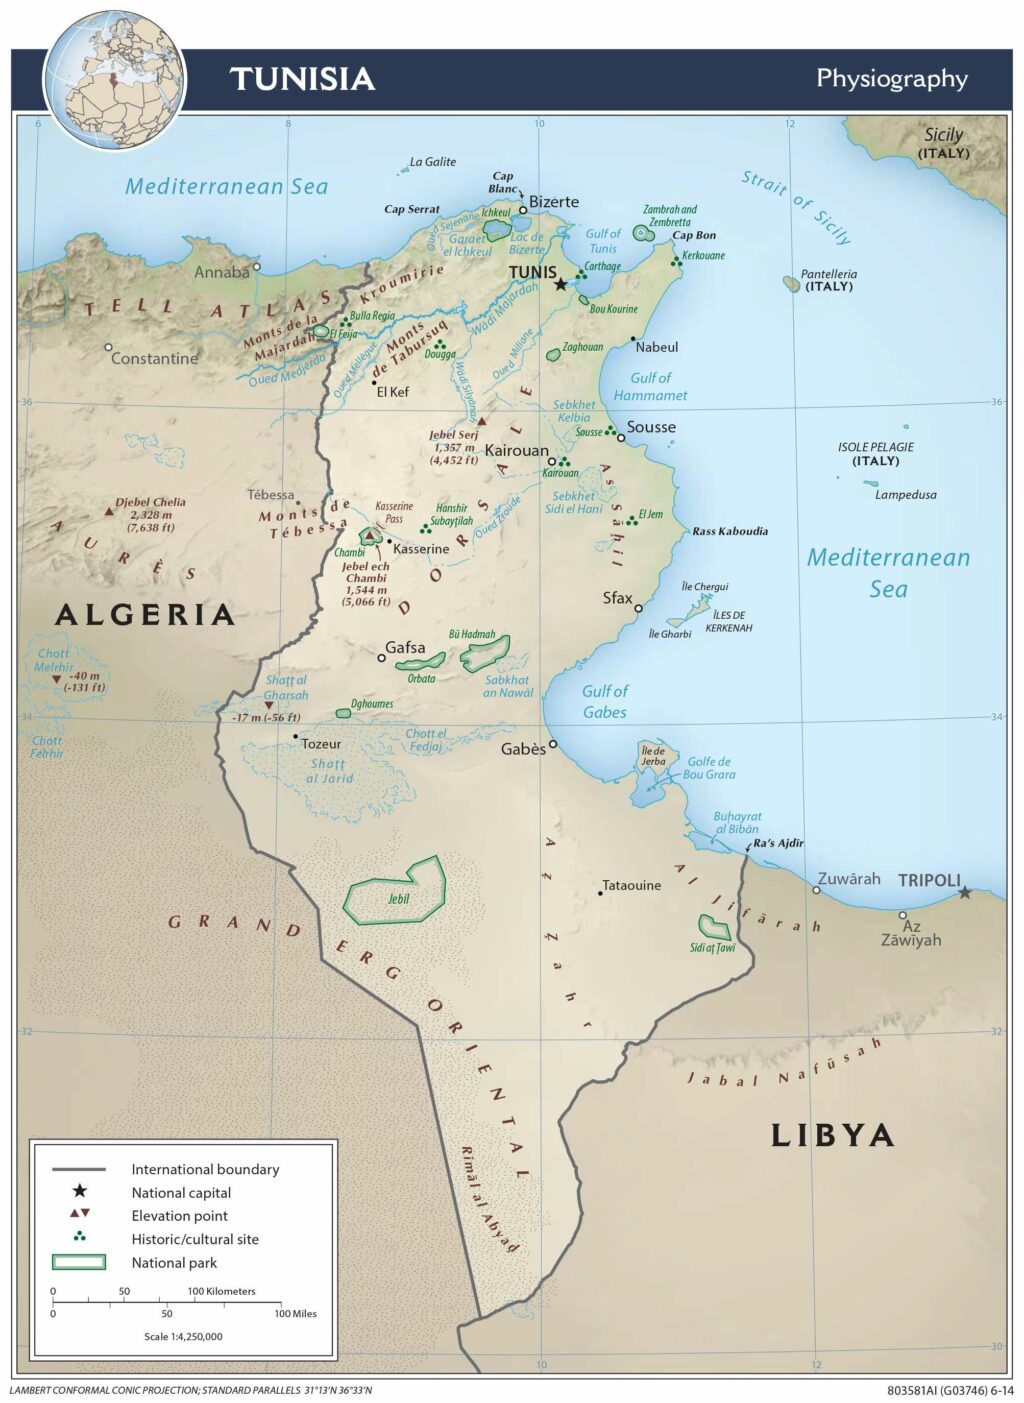 Bản đồ vật lý Tunisia